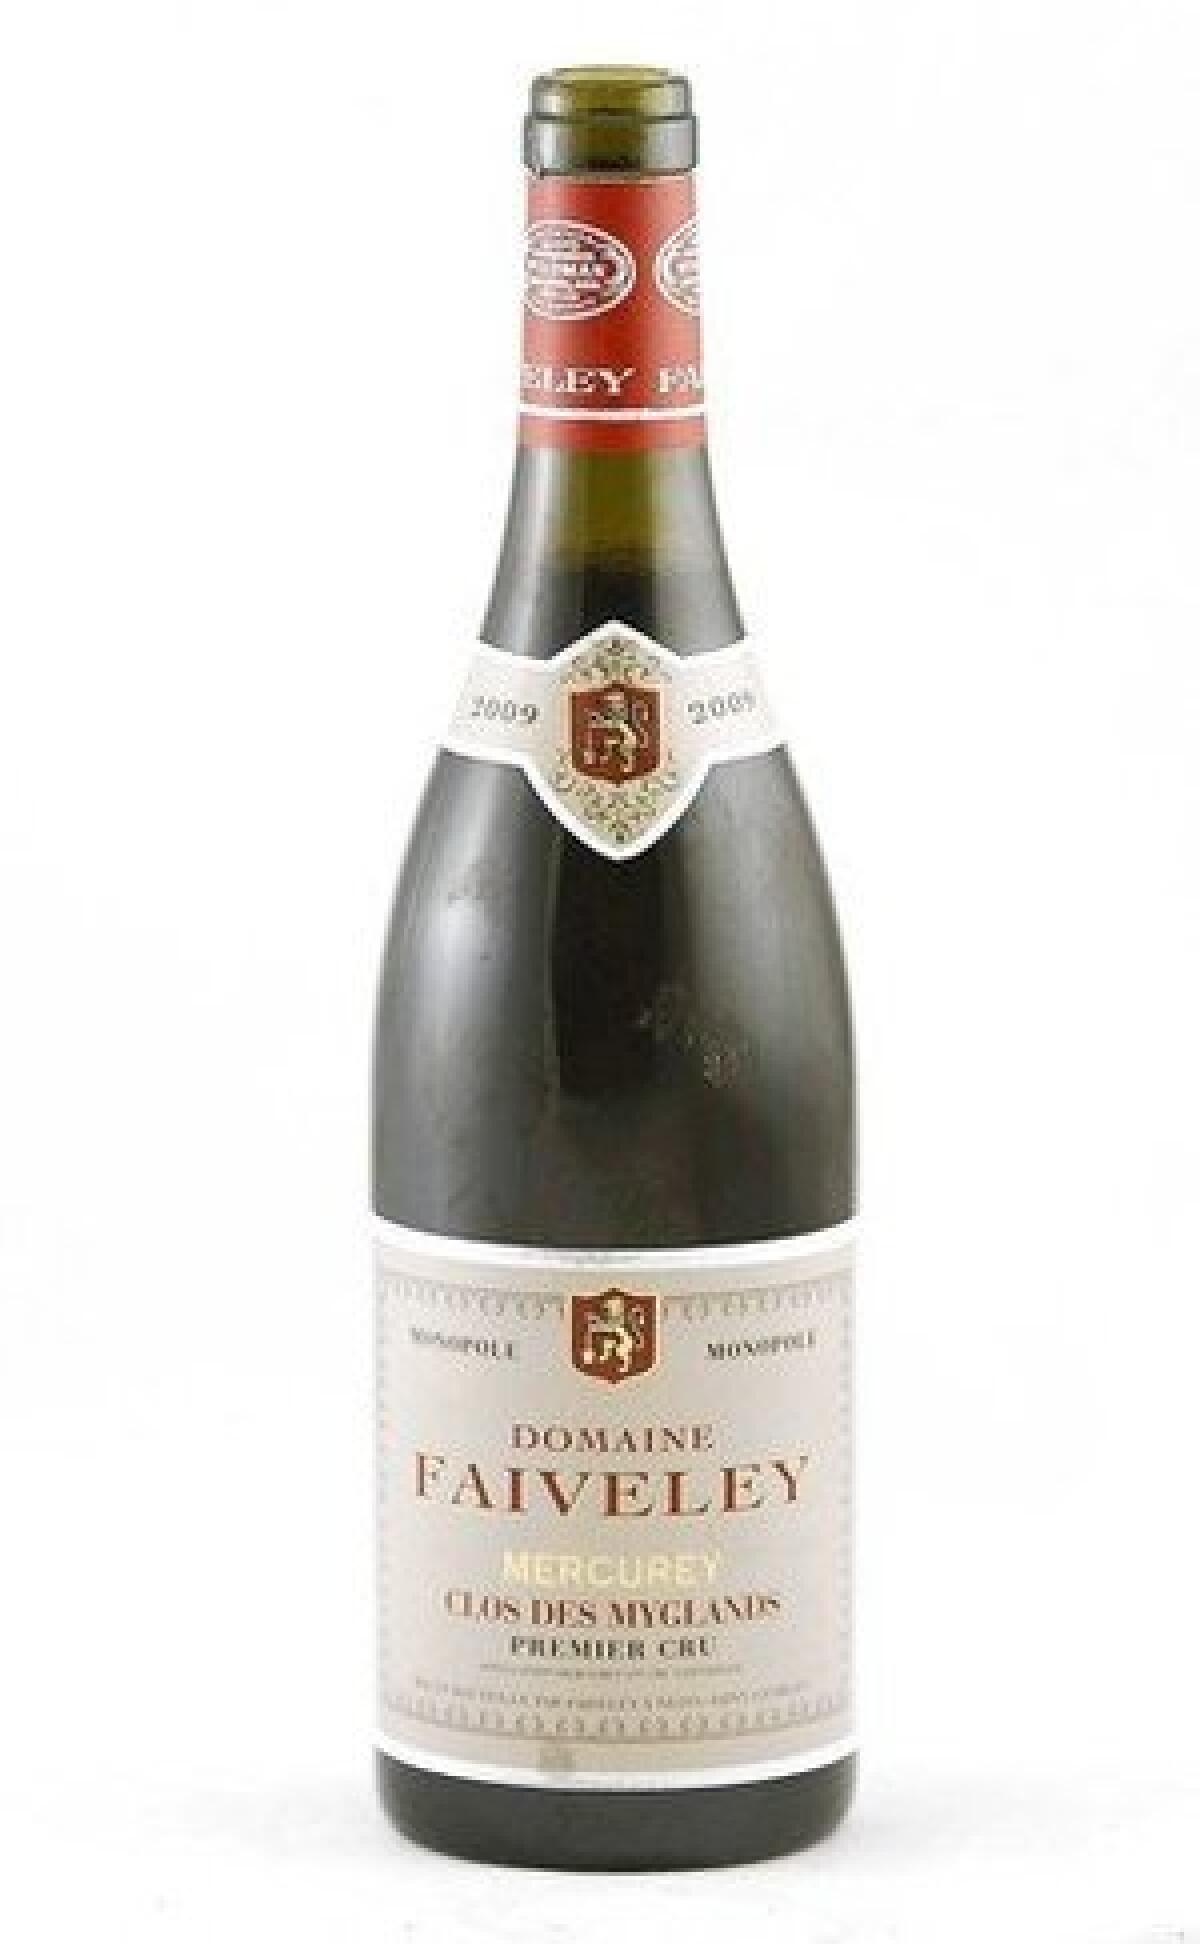 2009 Domaine Faiveley Mercurey 'Clos des Myglands, Premier Cru'.